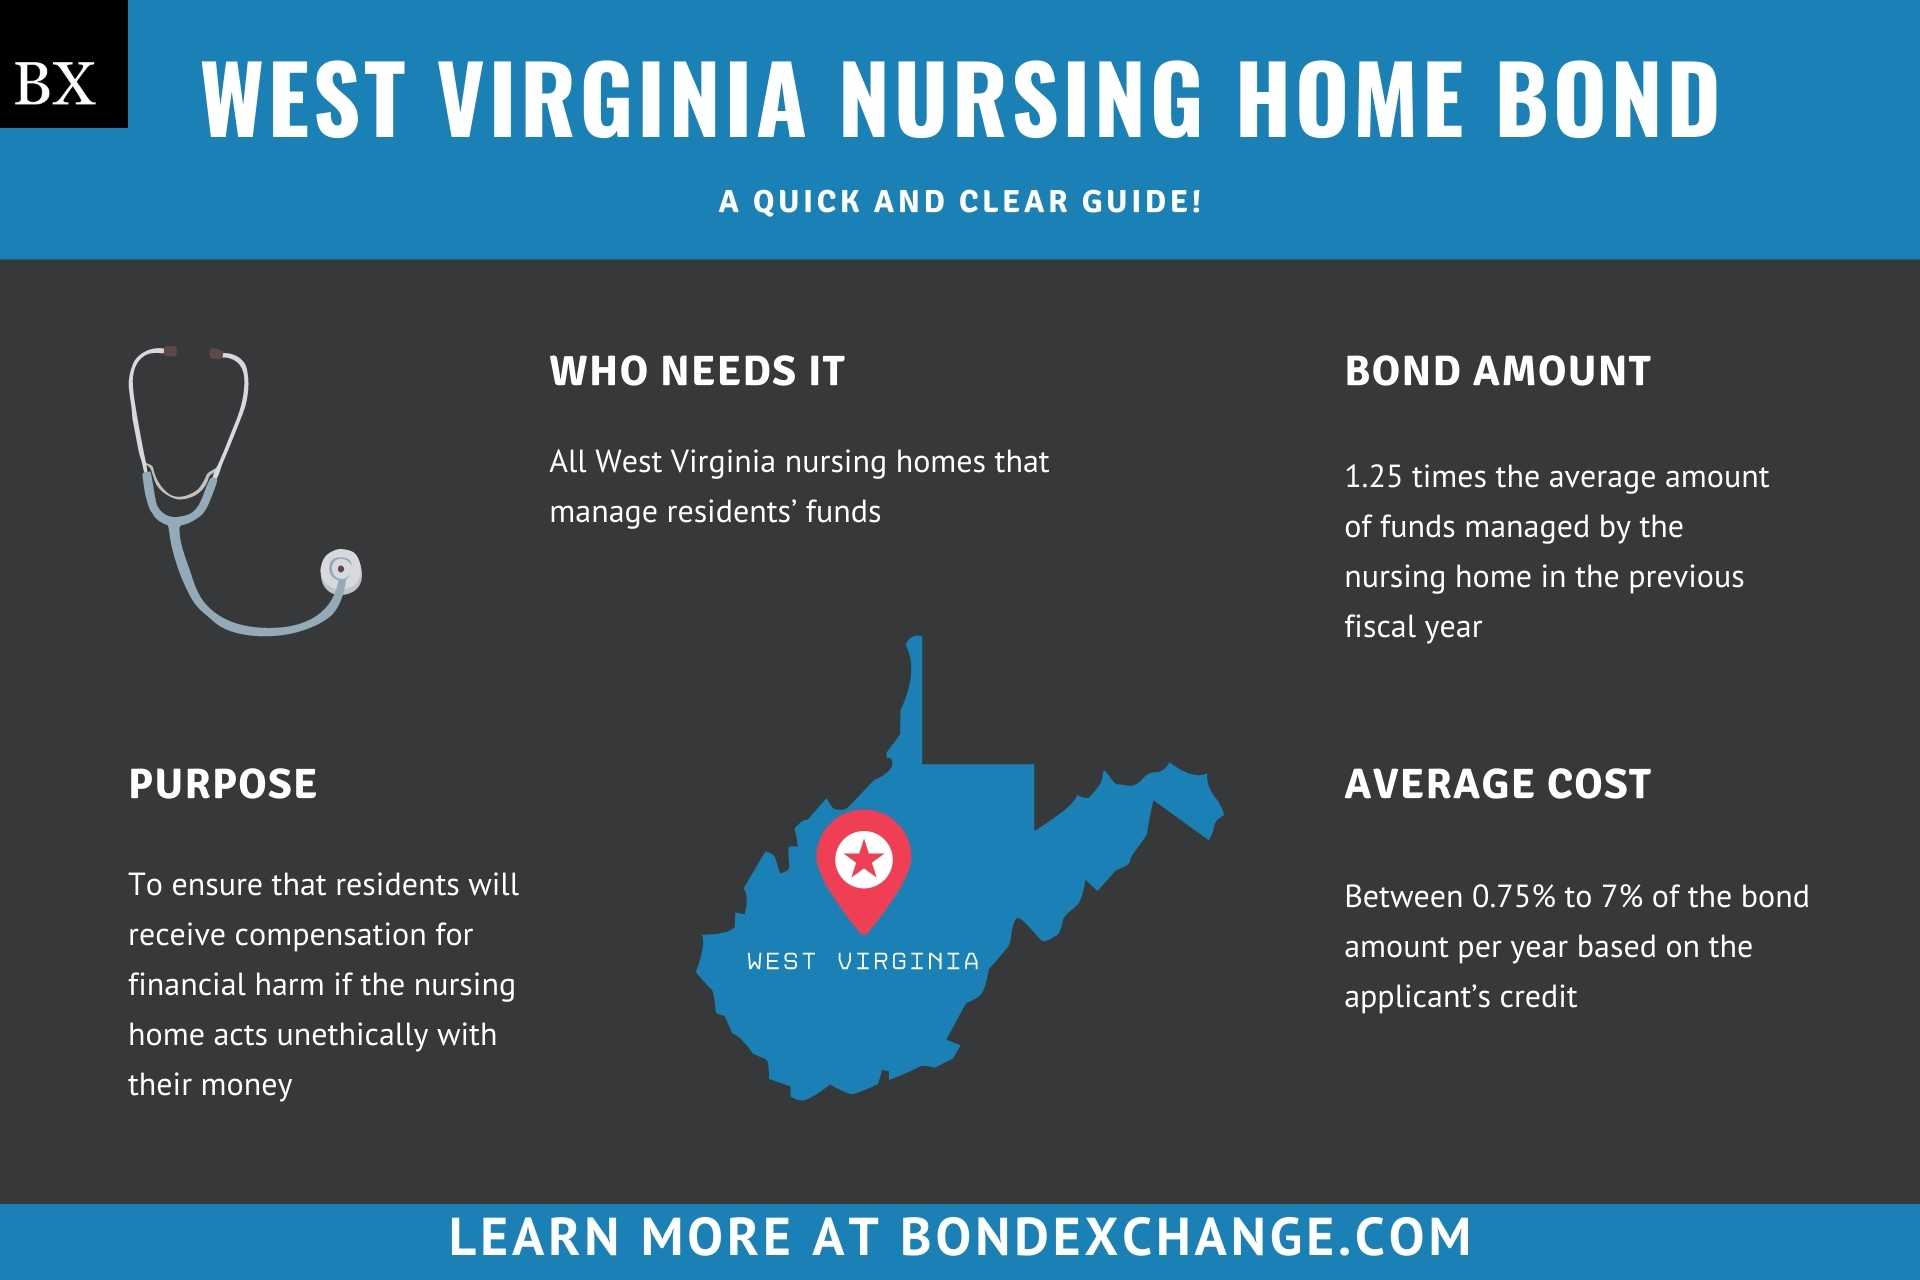 West Virginia Nursing Home Bond